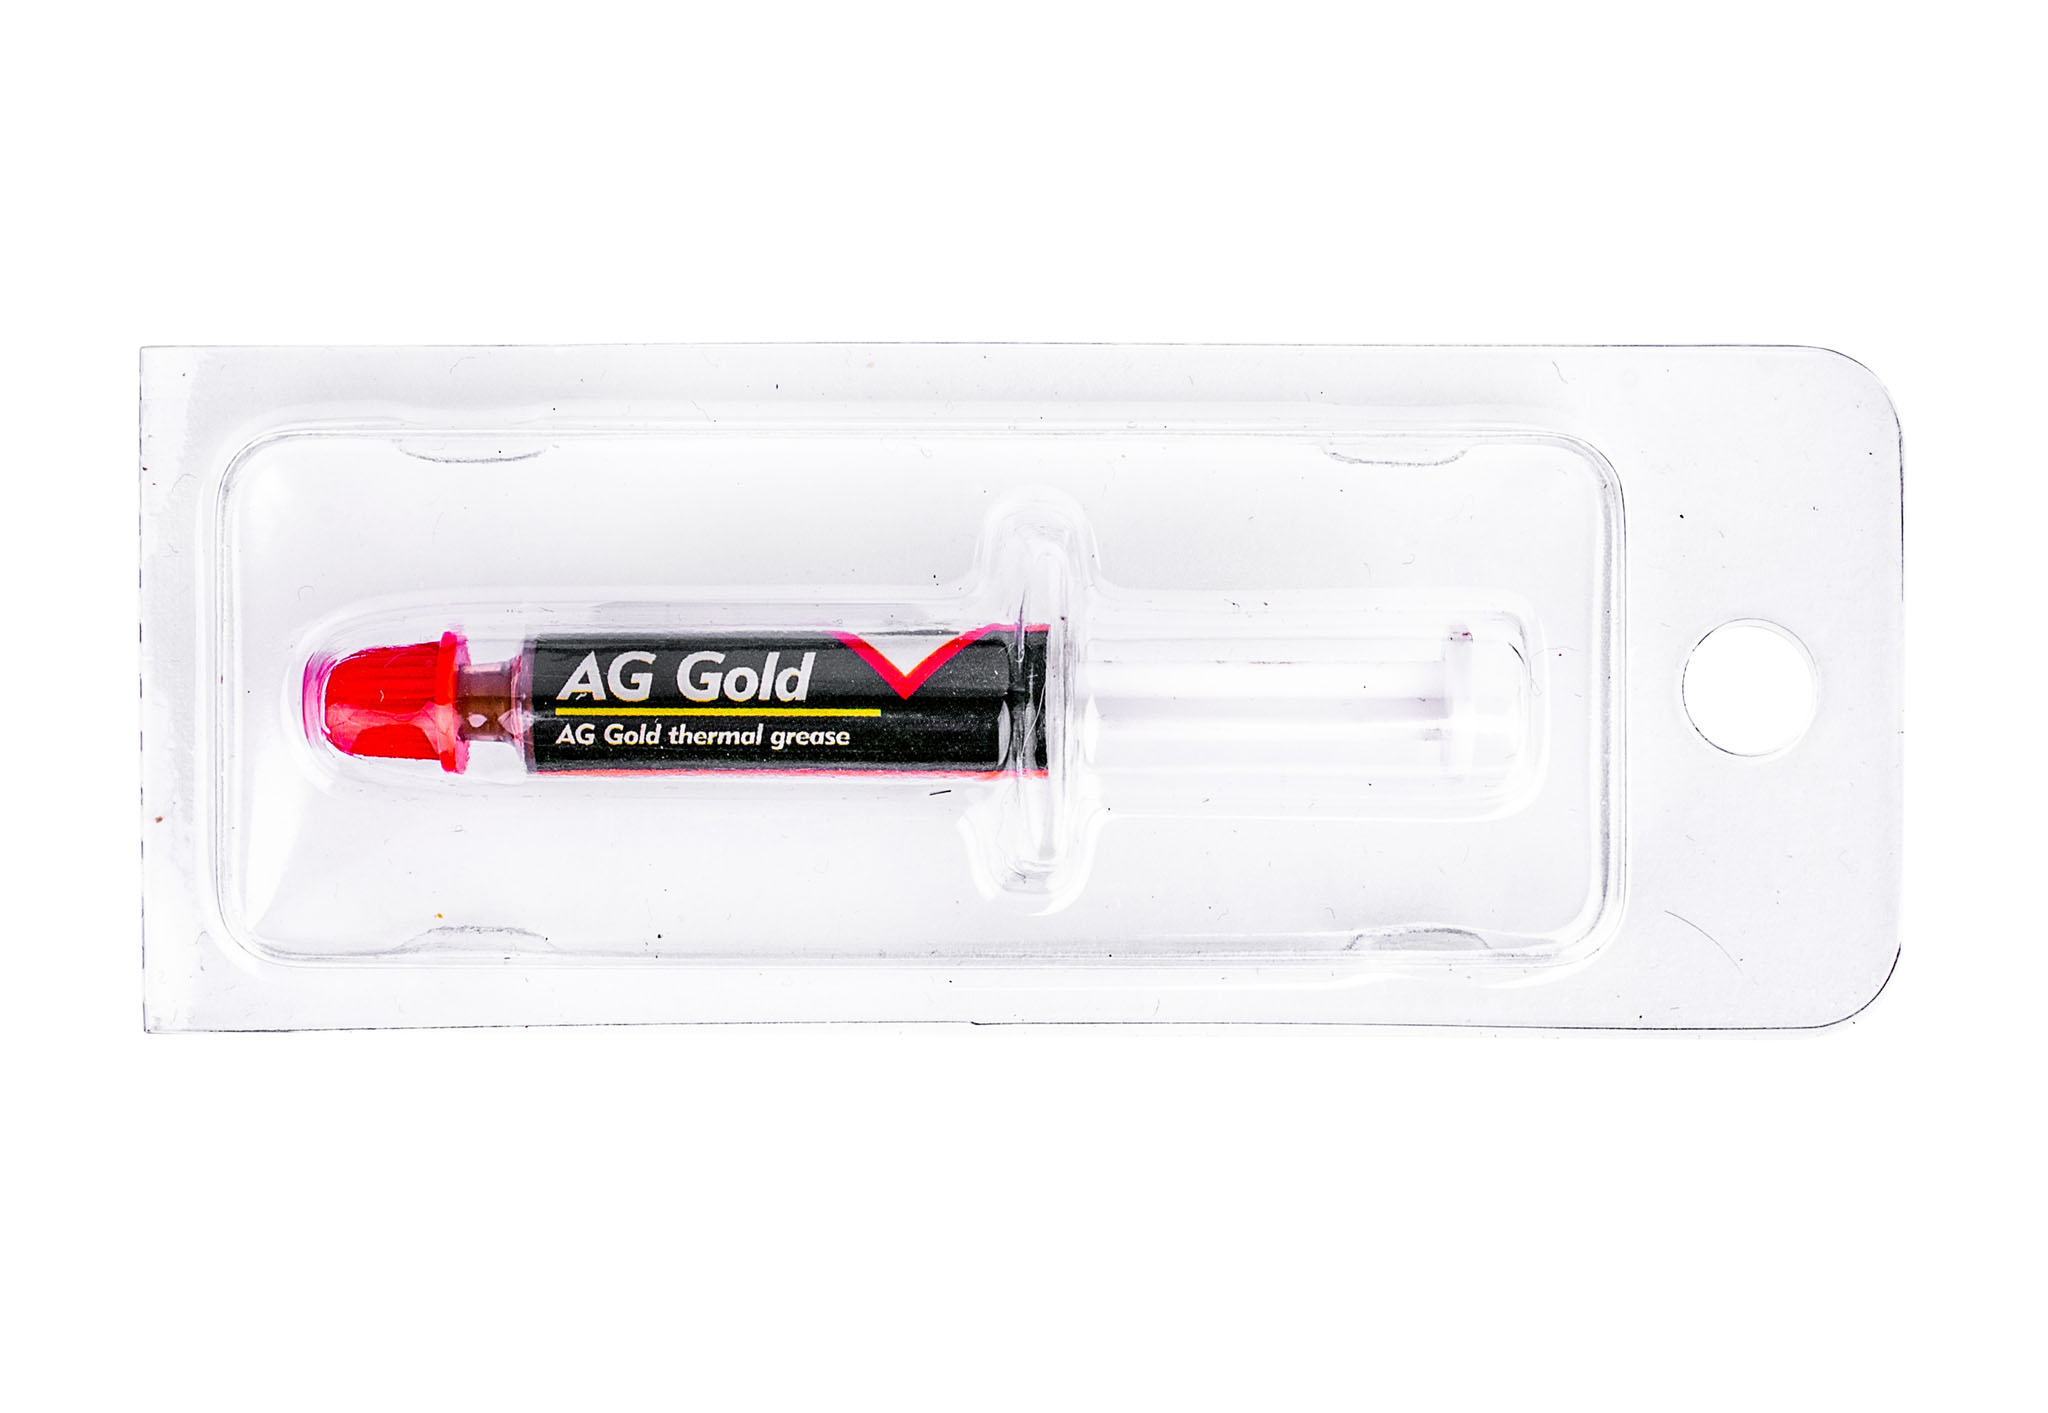 Strzykawka AG Gold o pojemności 1g – pasta termoprzewodząca ze złotem.